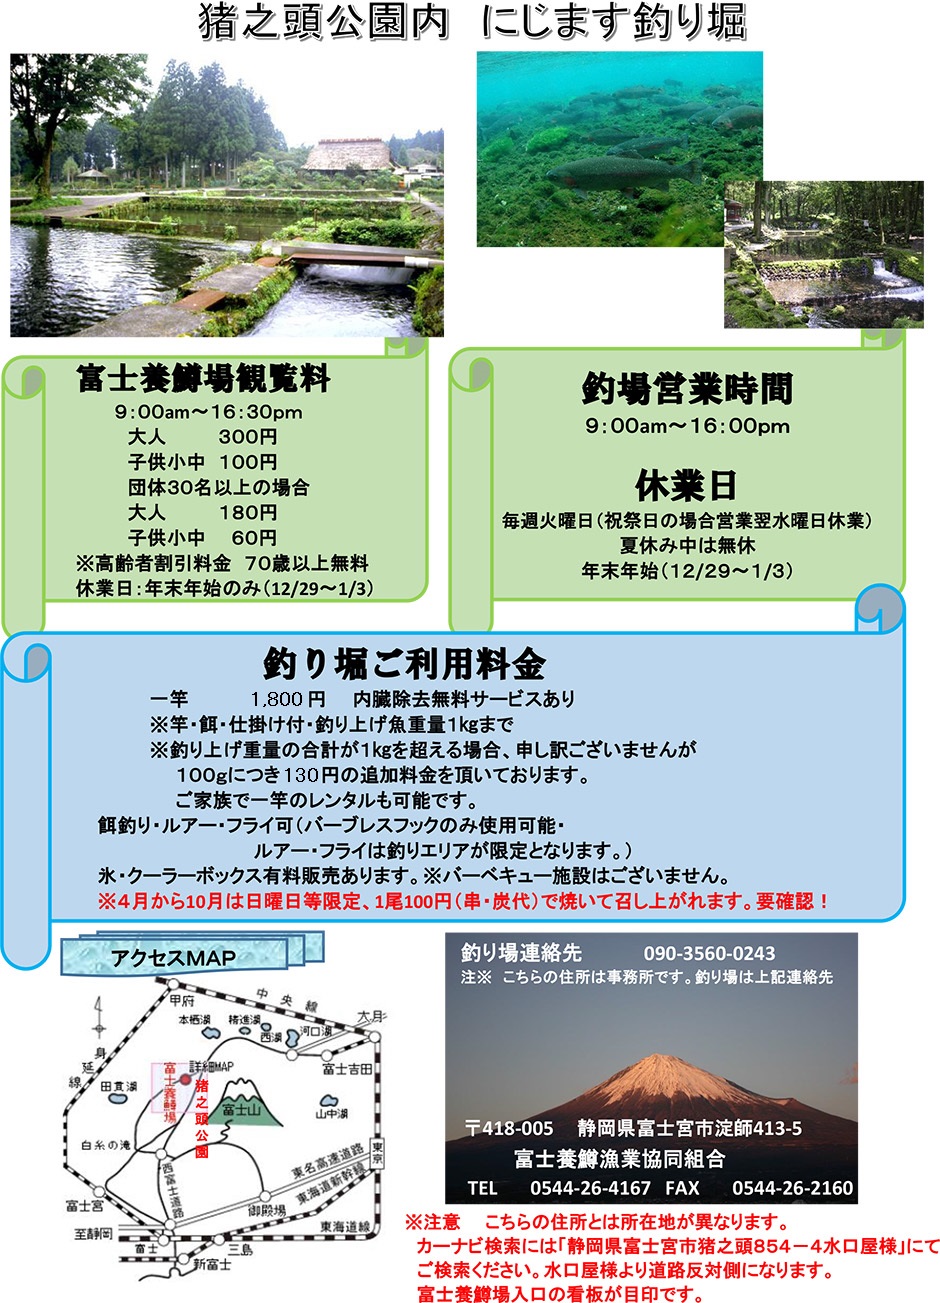 マス釣り 遊び 見学 鱒 富士養鱒漁業組合 概要 富士山 鱒